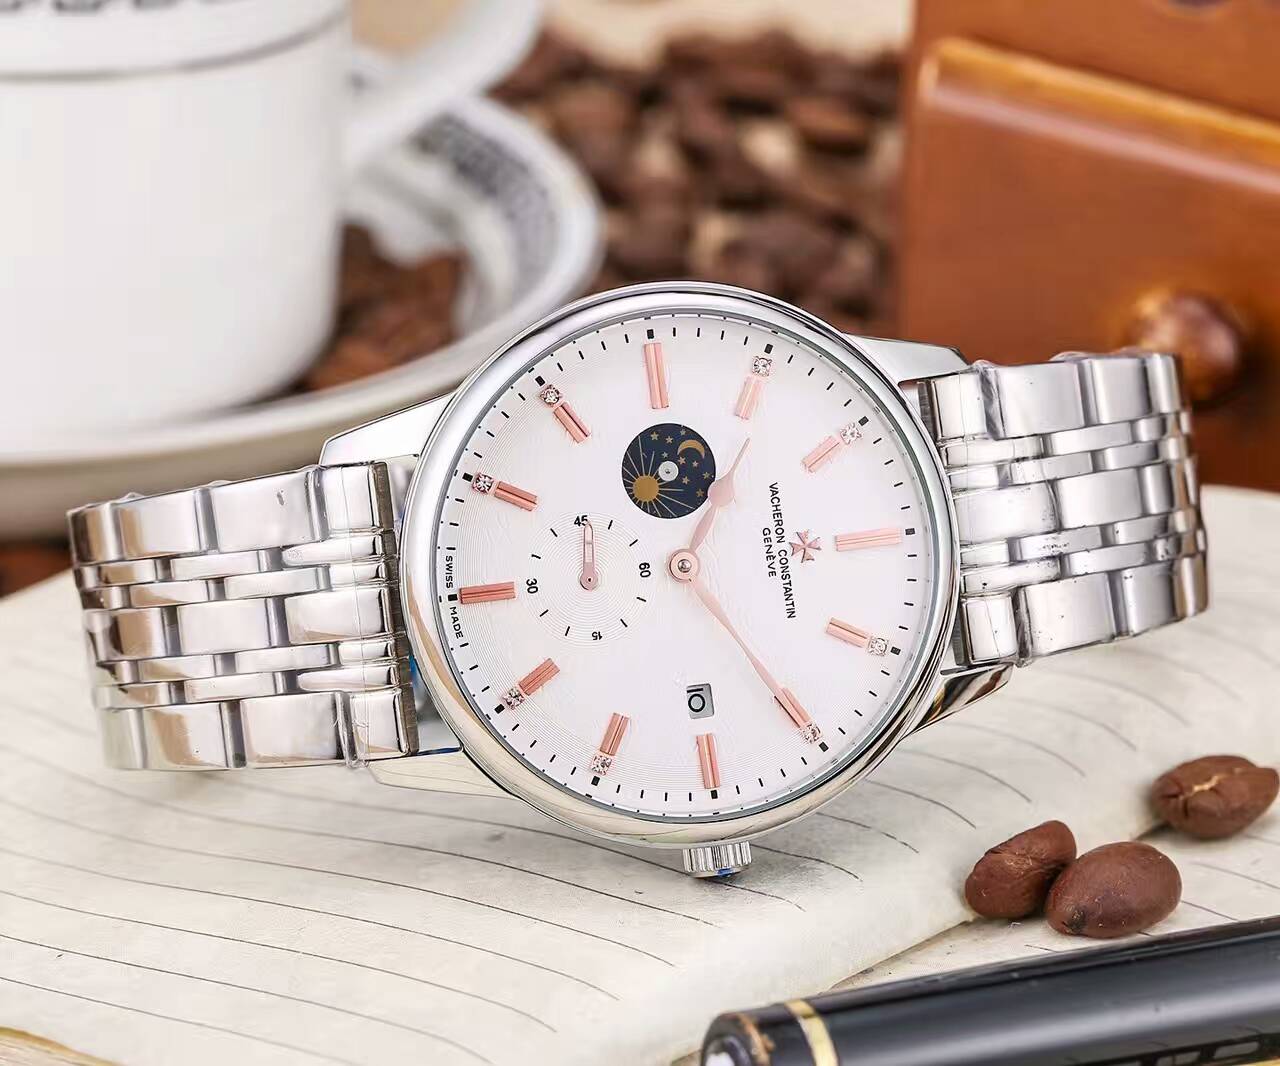 江詩丹頓 頂級機械機芯 礦物質超強鏡面 真牛皮錶帶 精湛品質 精品男士腕錶